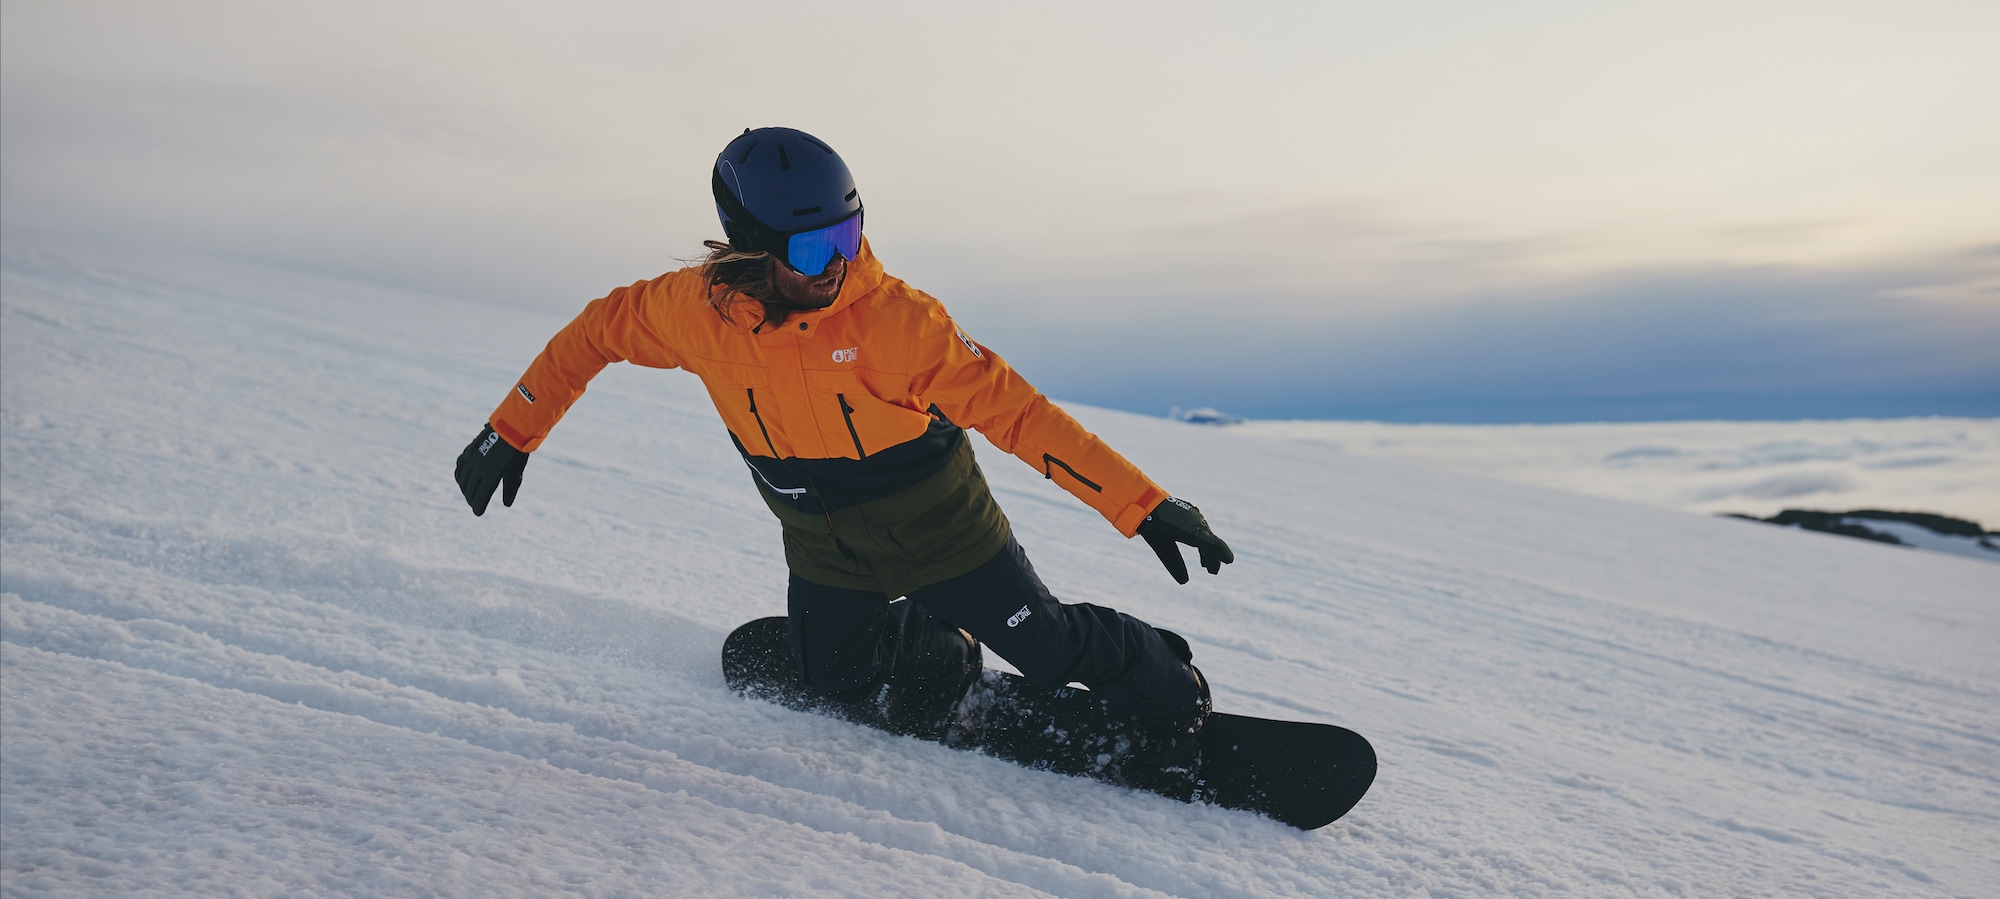 V teple a bezpečí po celou sezónu Snowboardové bundy